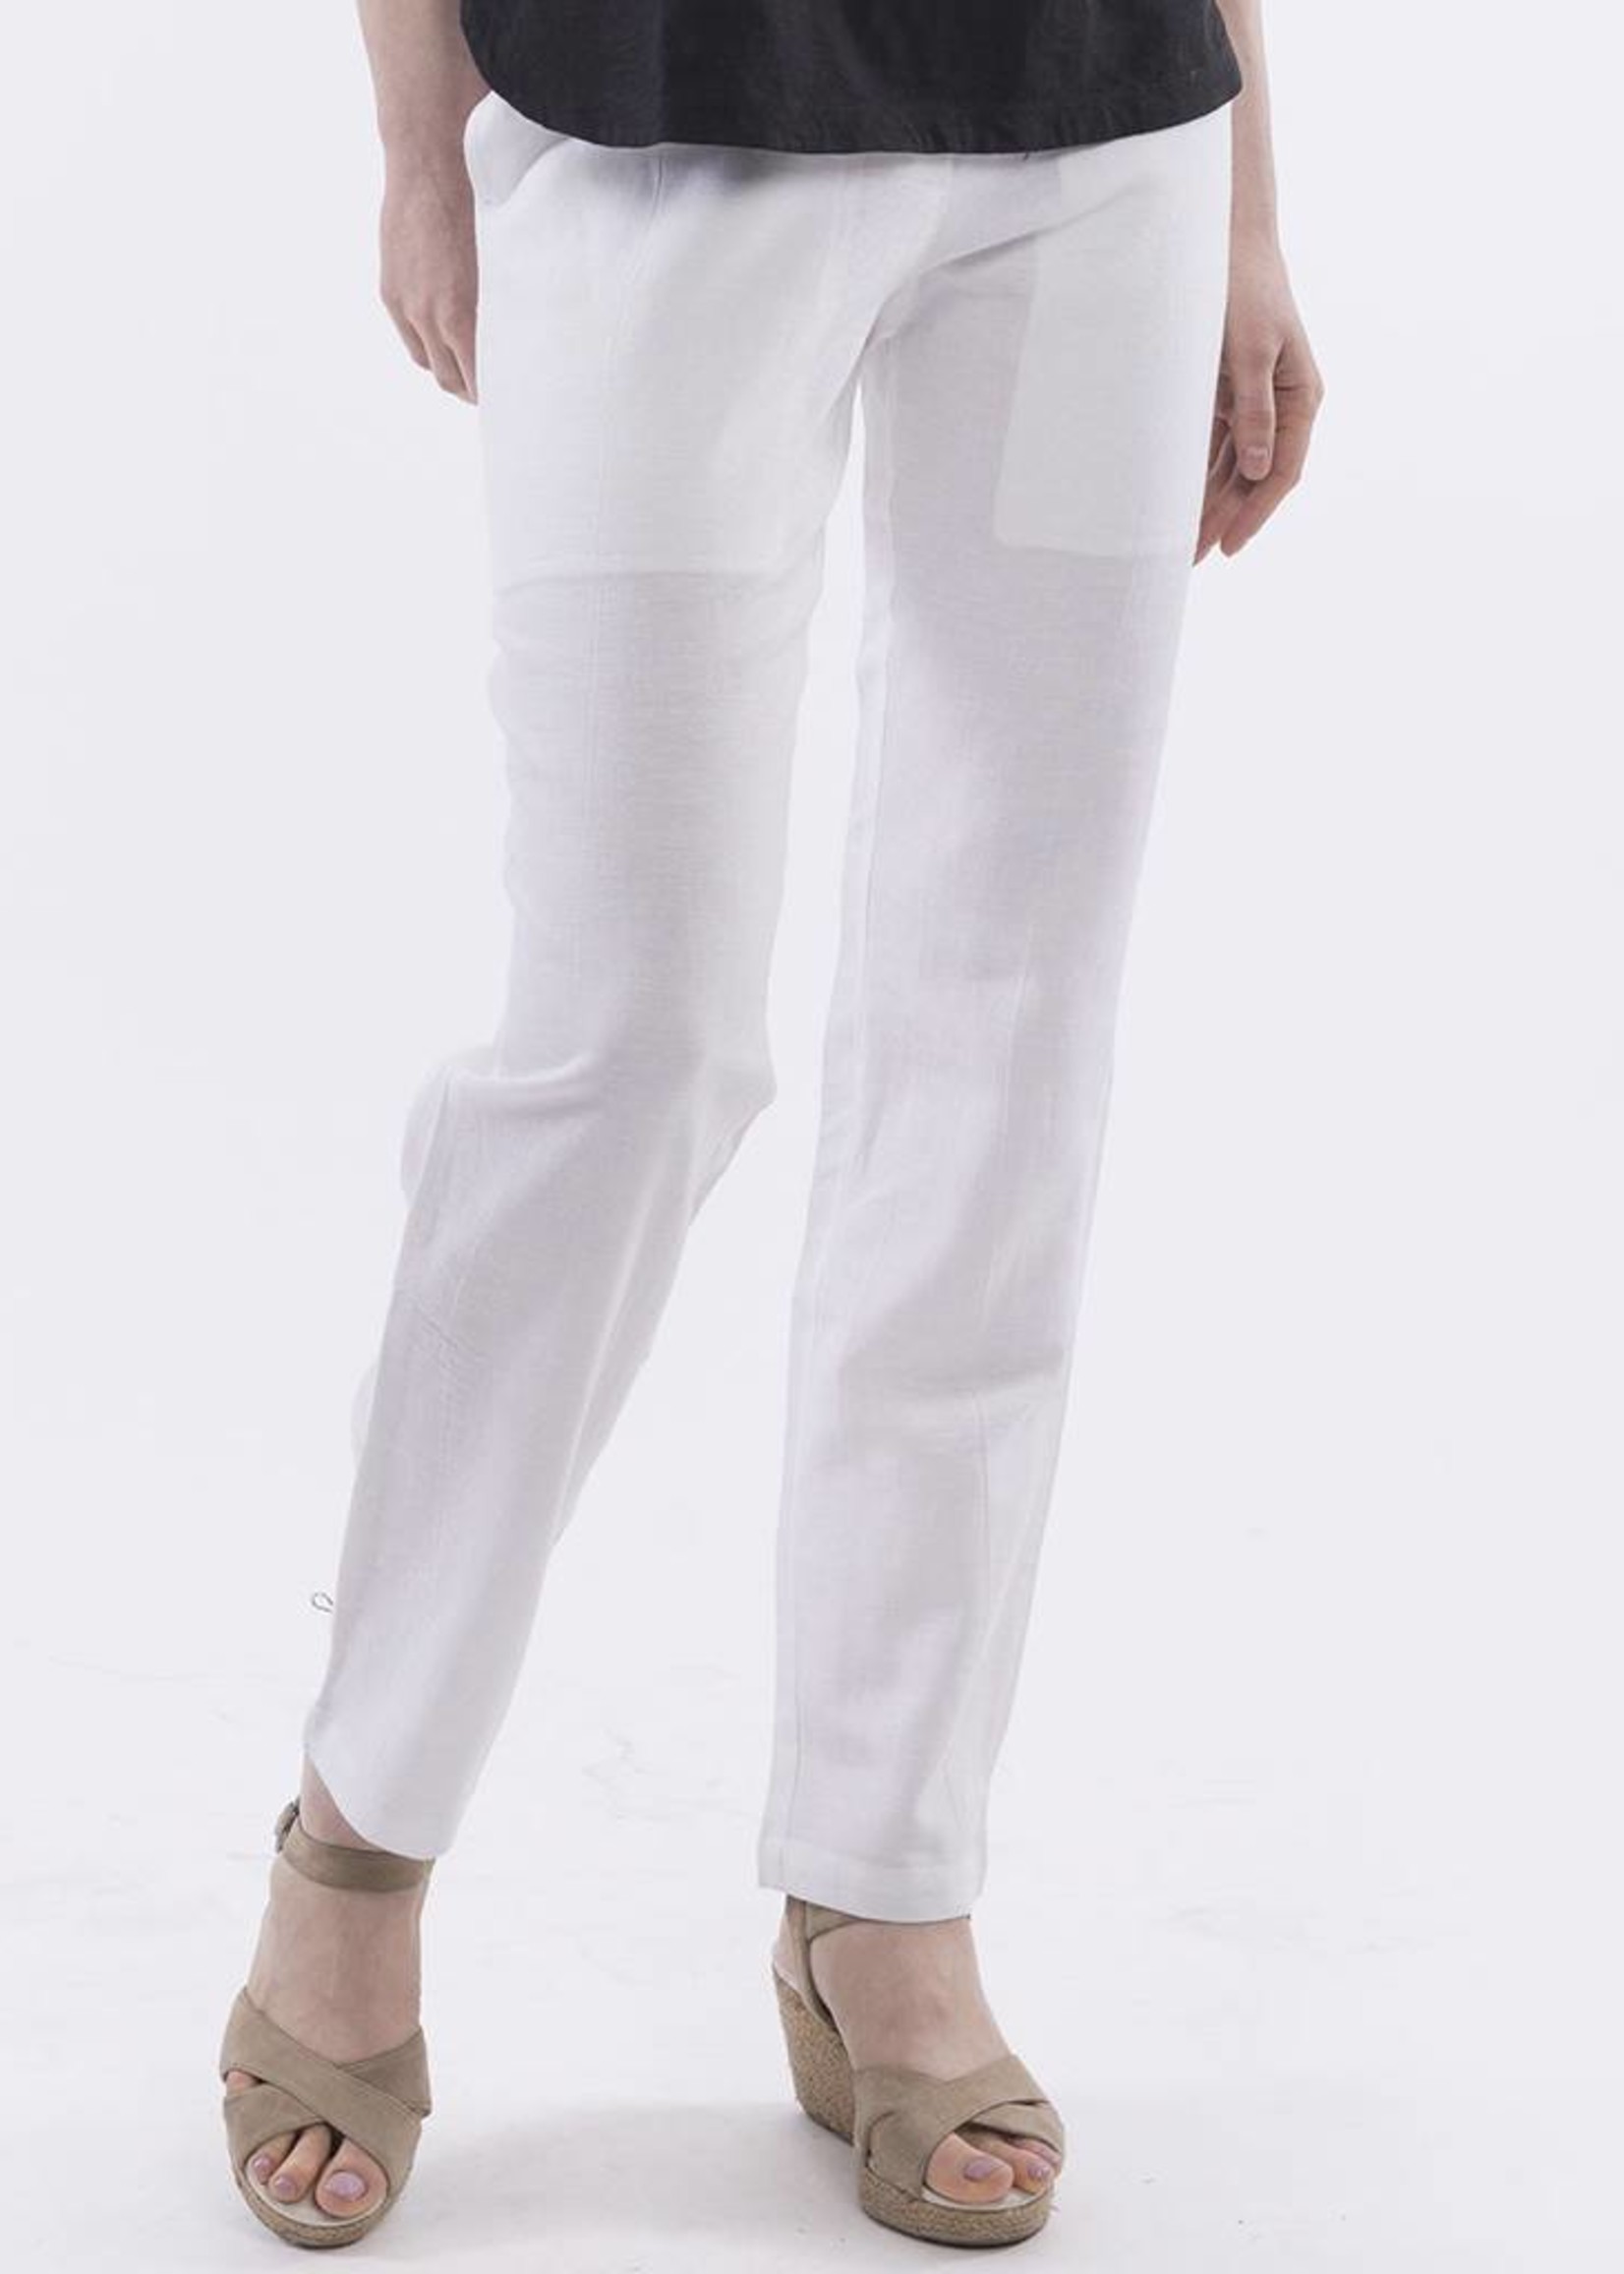 Womens Orientique Long Linen Pants in White - Fe's Fashion & Decor